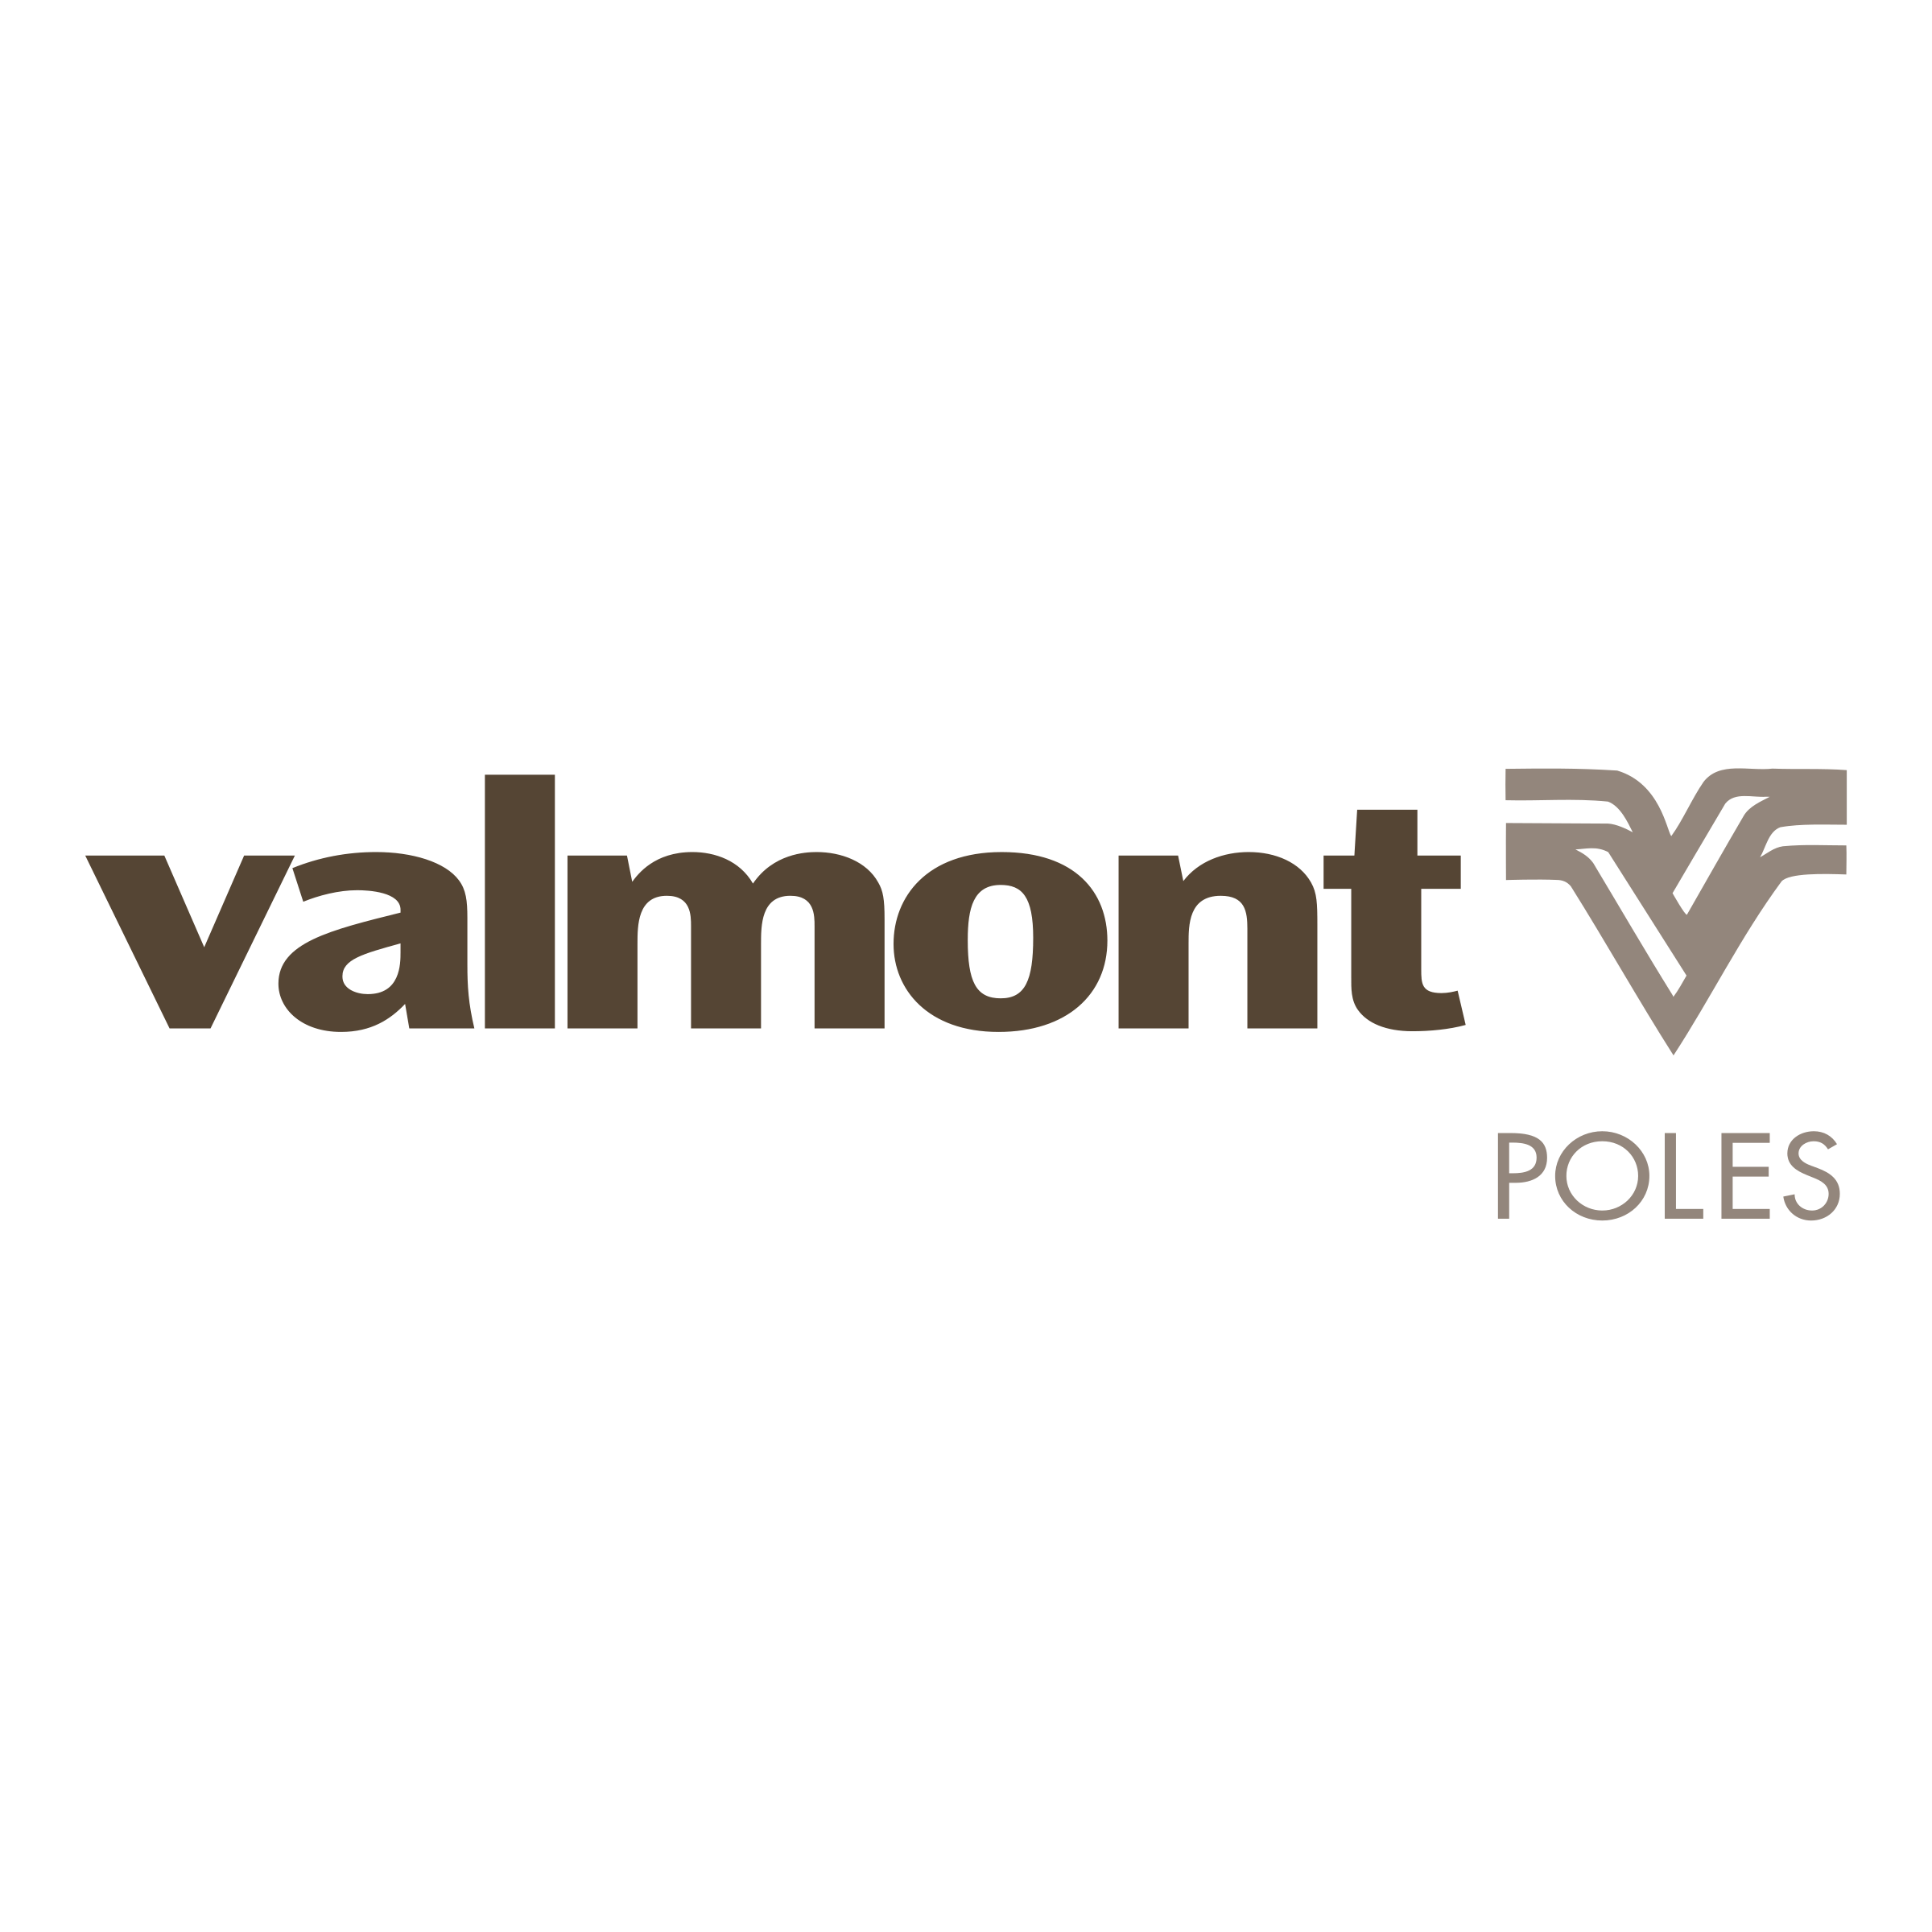 Valmont Logo - Valmont Logo PNG Transparent & SVG Vector